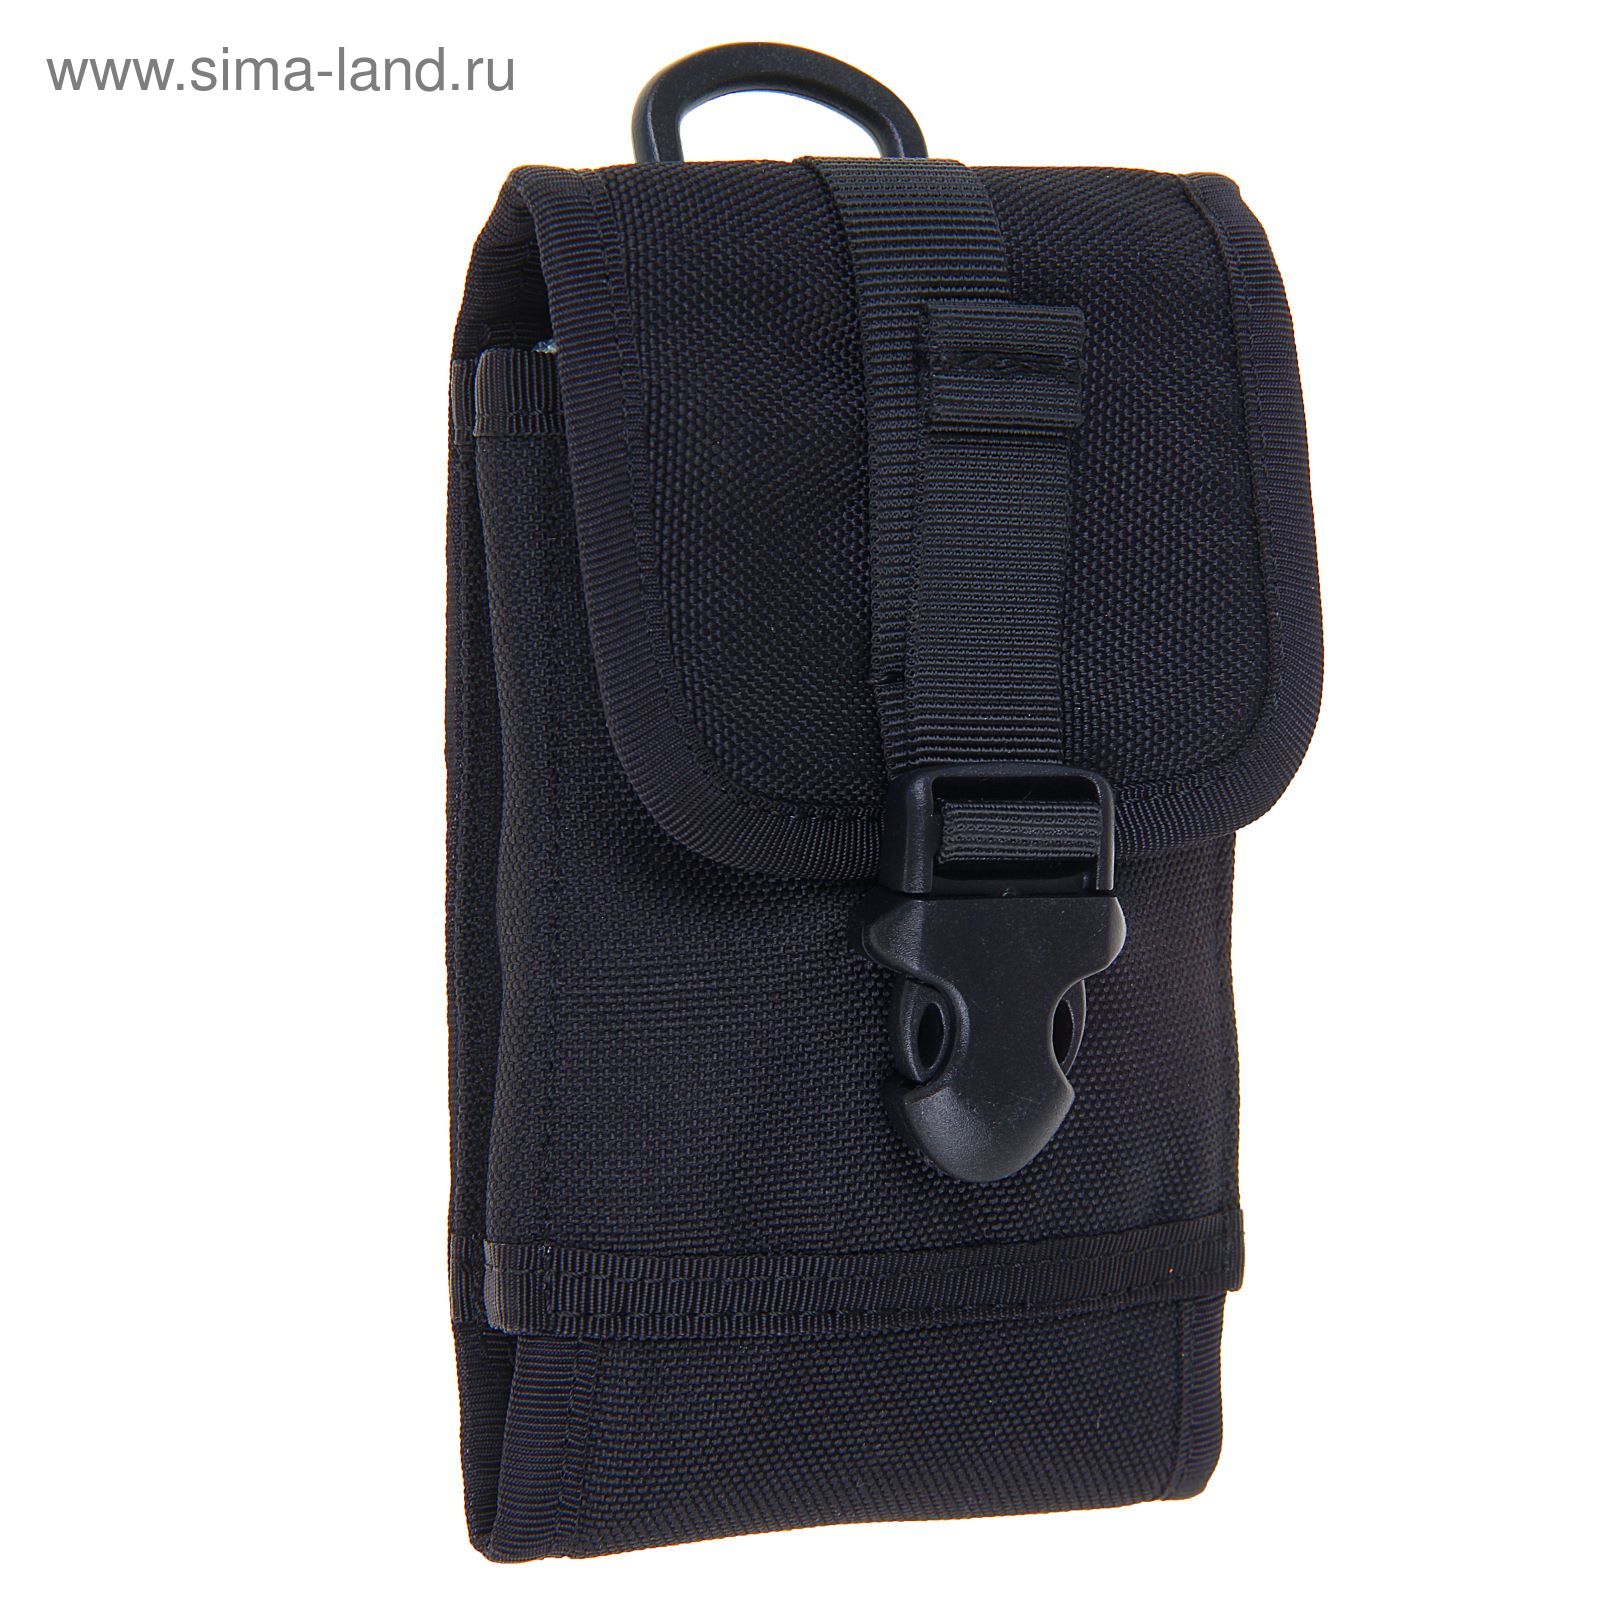 Подсумок Mobile bag Black BP-19-BK, 0,4 л